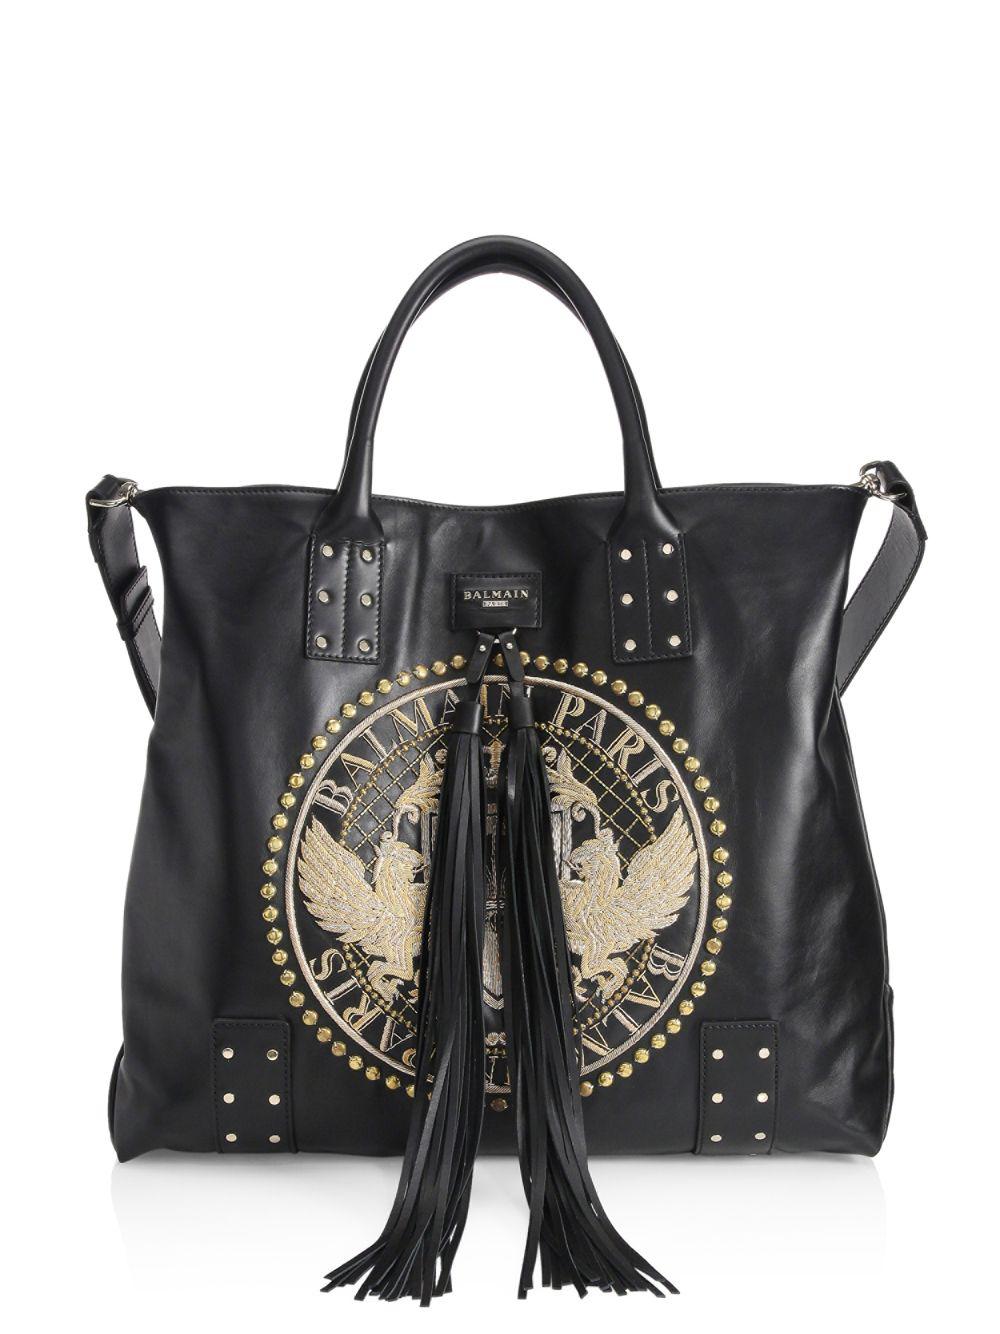 Balmain Domaine Leather Shopping Bag in Black for Men - Lyst